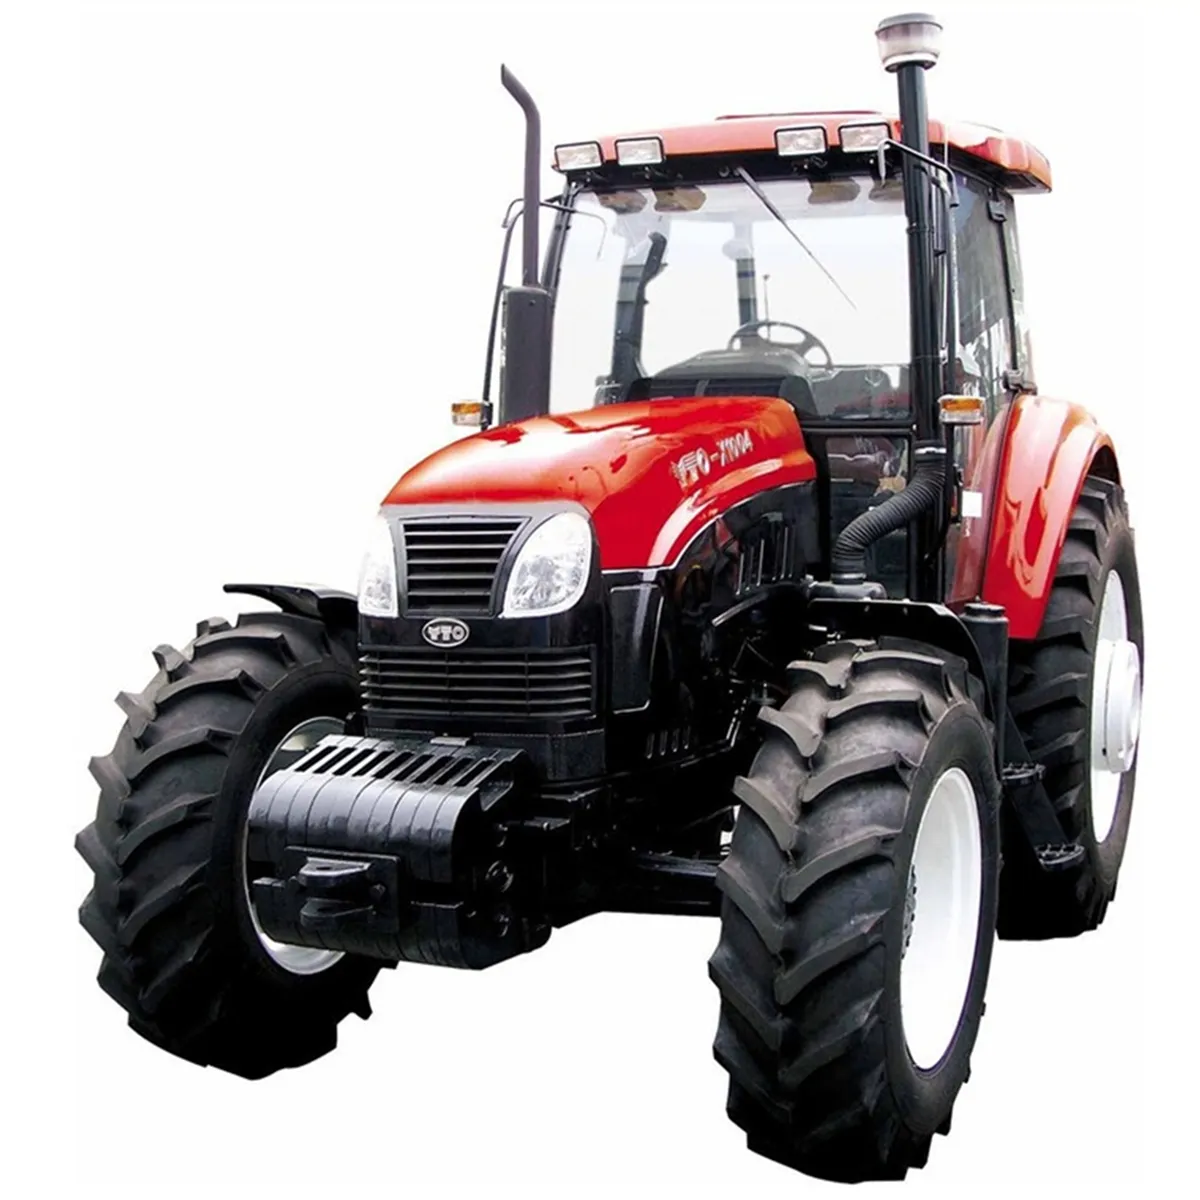 Yto-x1004 yto traktor